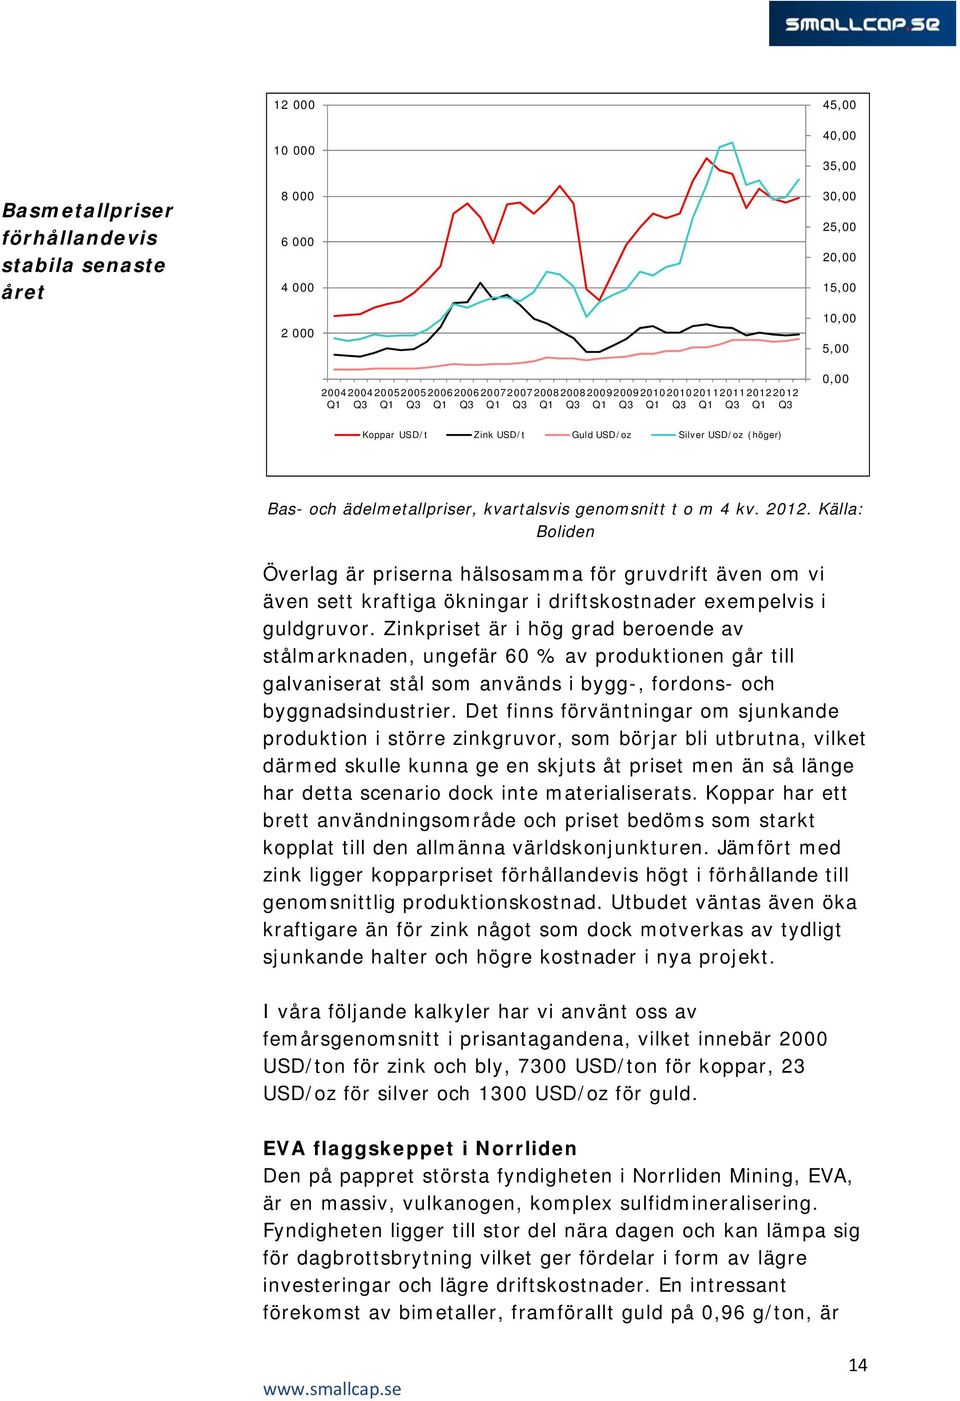 ädelmetallpriser, kvartalsvis genomsnitt t o m 4 kv. 2012. Källa: Boliden Överlag är priserna hälsosamma för gruvdrift även om vi även sett kraftiga ökningar i driftskostnader exempelvis i guldgruvor.